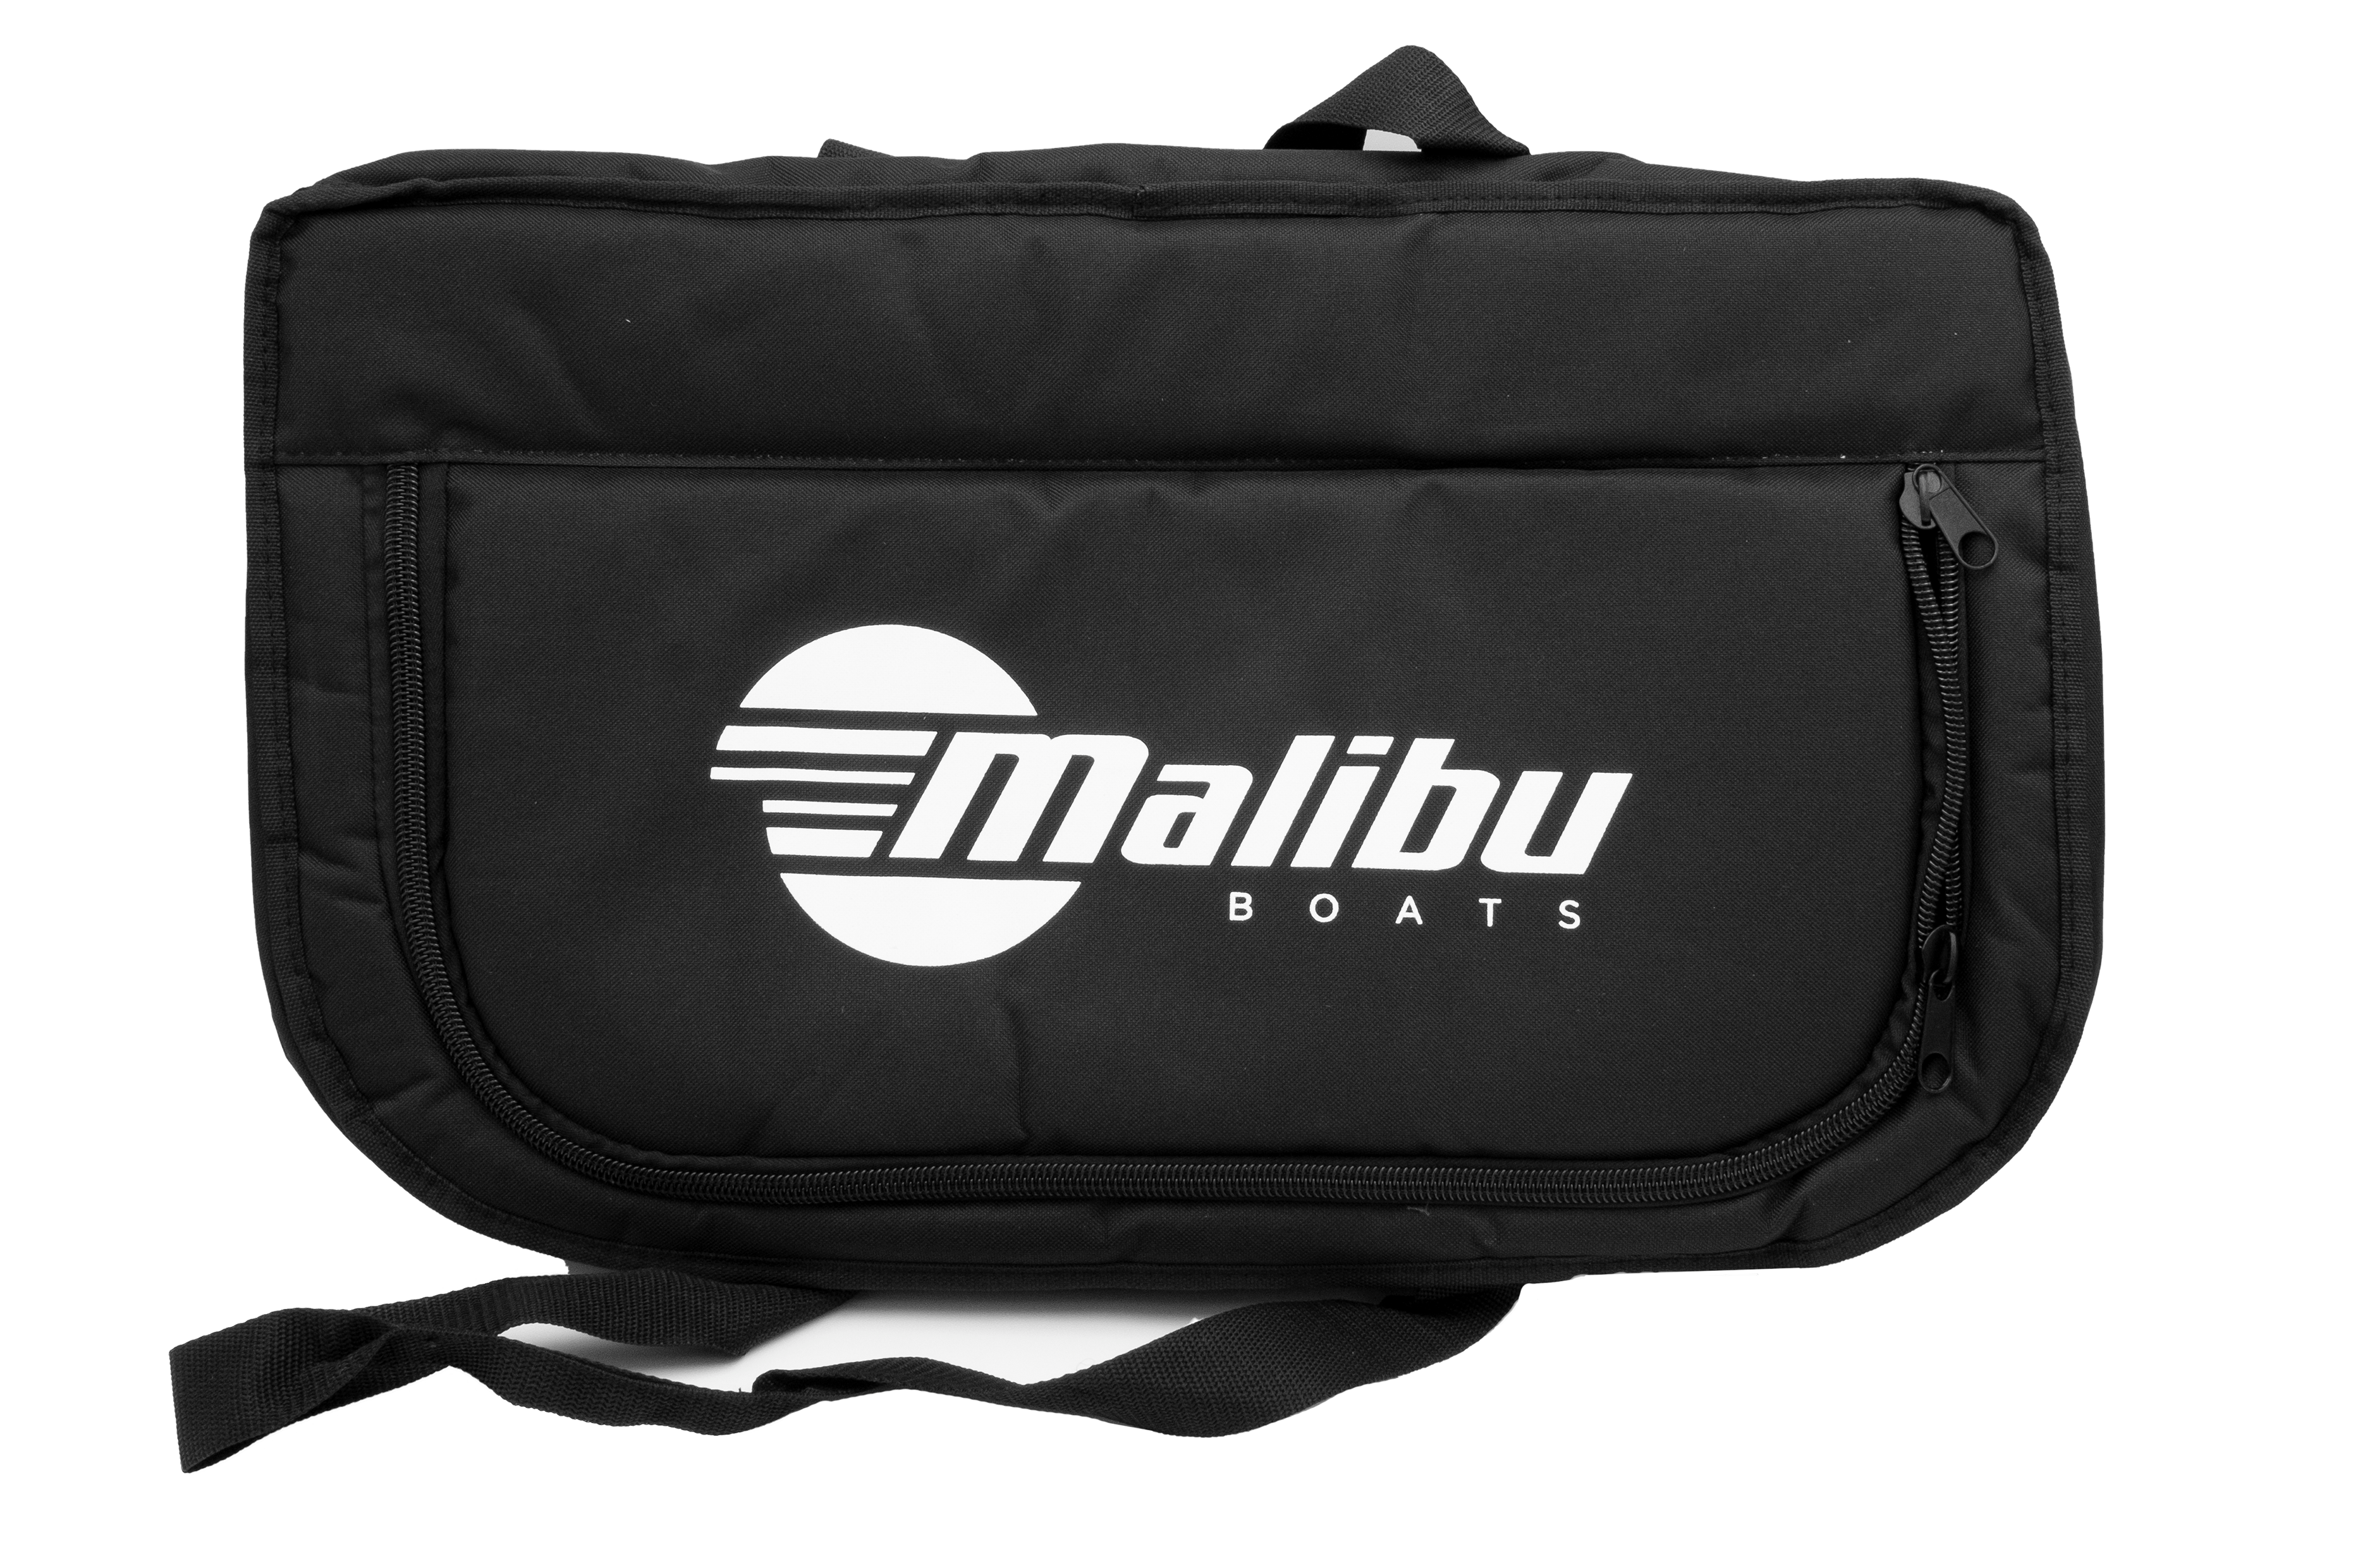 Malibu Boats Soft Cooler Bag